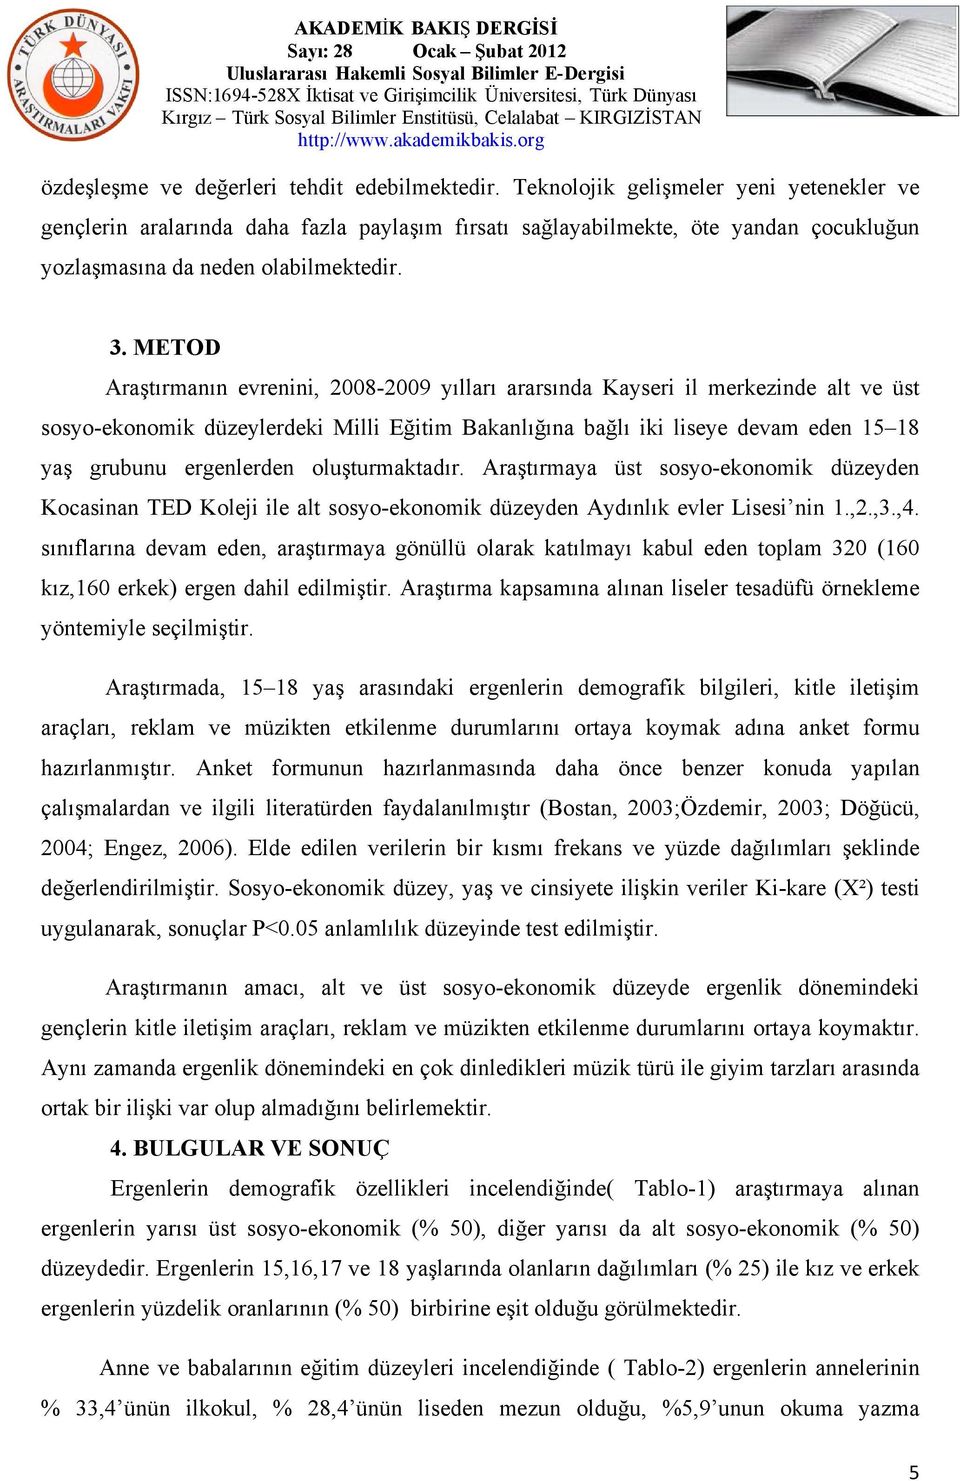 METOD Araştırmanın evrenini, 2008-2009 yılları ararsında Kayseri il merkezinde alt ve üst sosyo-ekonomik düzeylerdeki Milli Eğitim Bakanlığına bağlı iki liseye devam eden 15 18 yaş grubunu